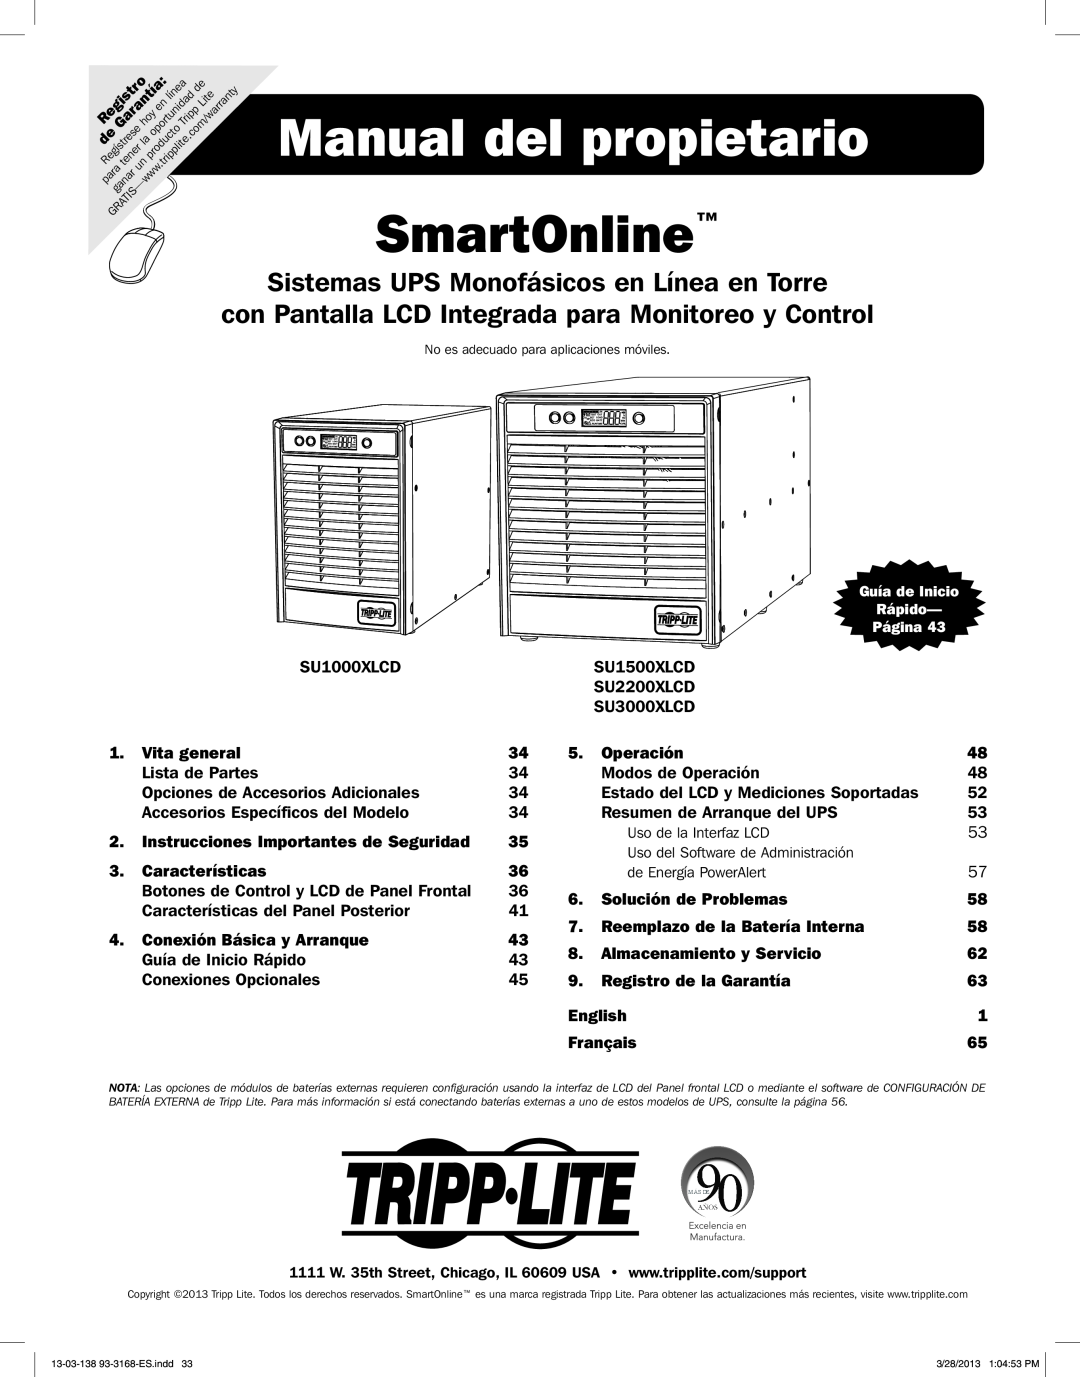 Tripp Lite SU1000XLCD Manual del propietario SmartOnline, Sistemas UPS Monofásicos en Línea en Torre, Operación, English 